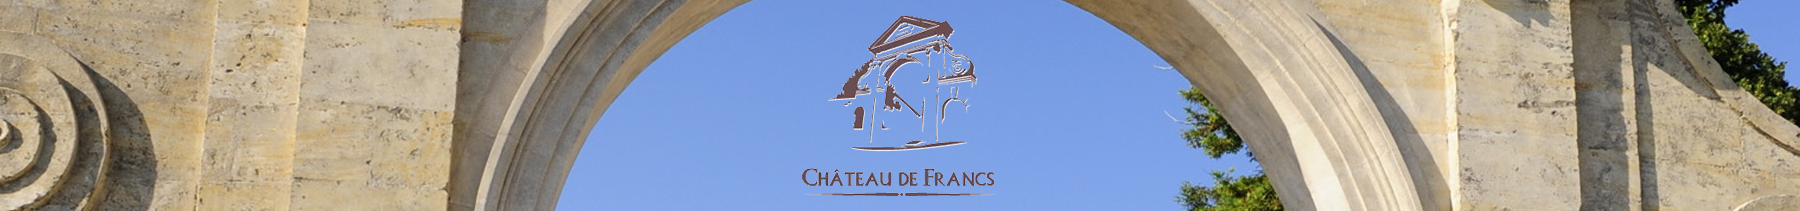 Château de Francs